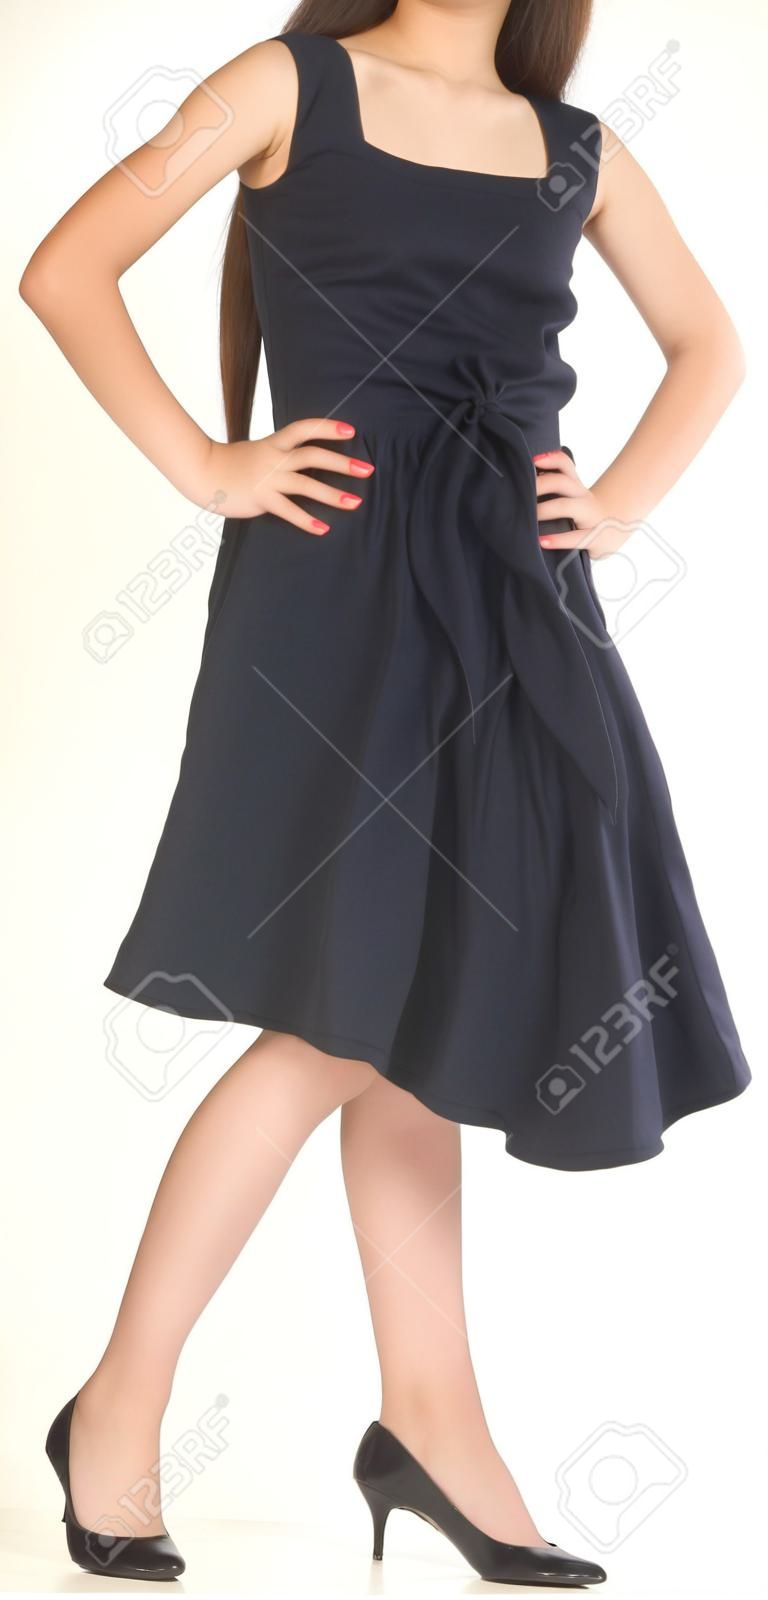 Menina asiática adolescente posando em um vestido preto e saltos